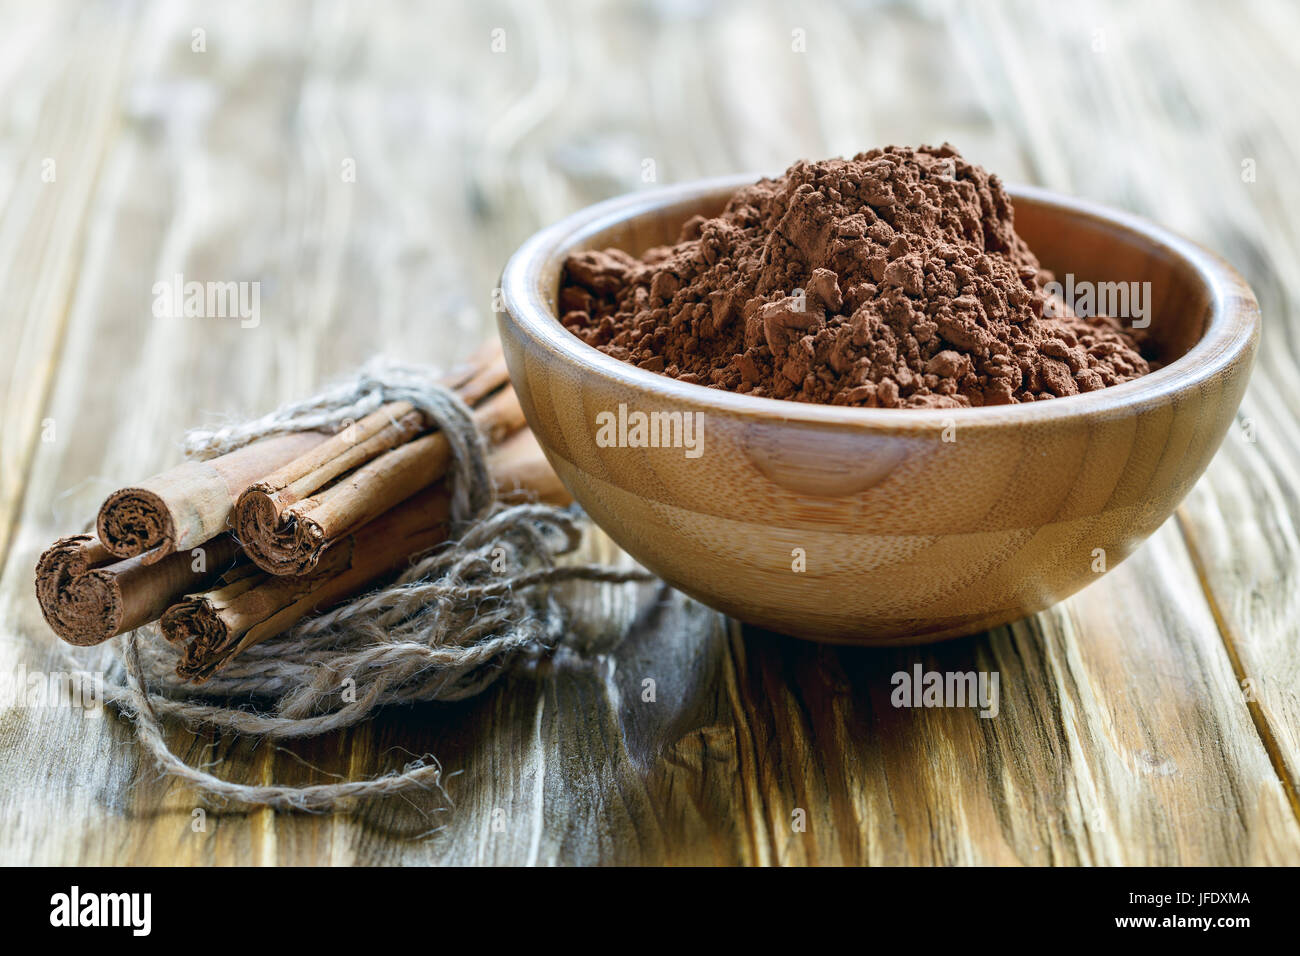 La poudre de cacao dans un bol en bois. Banque D'Images